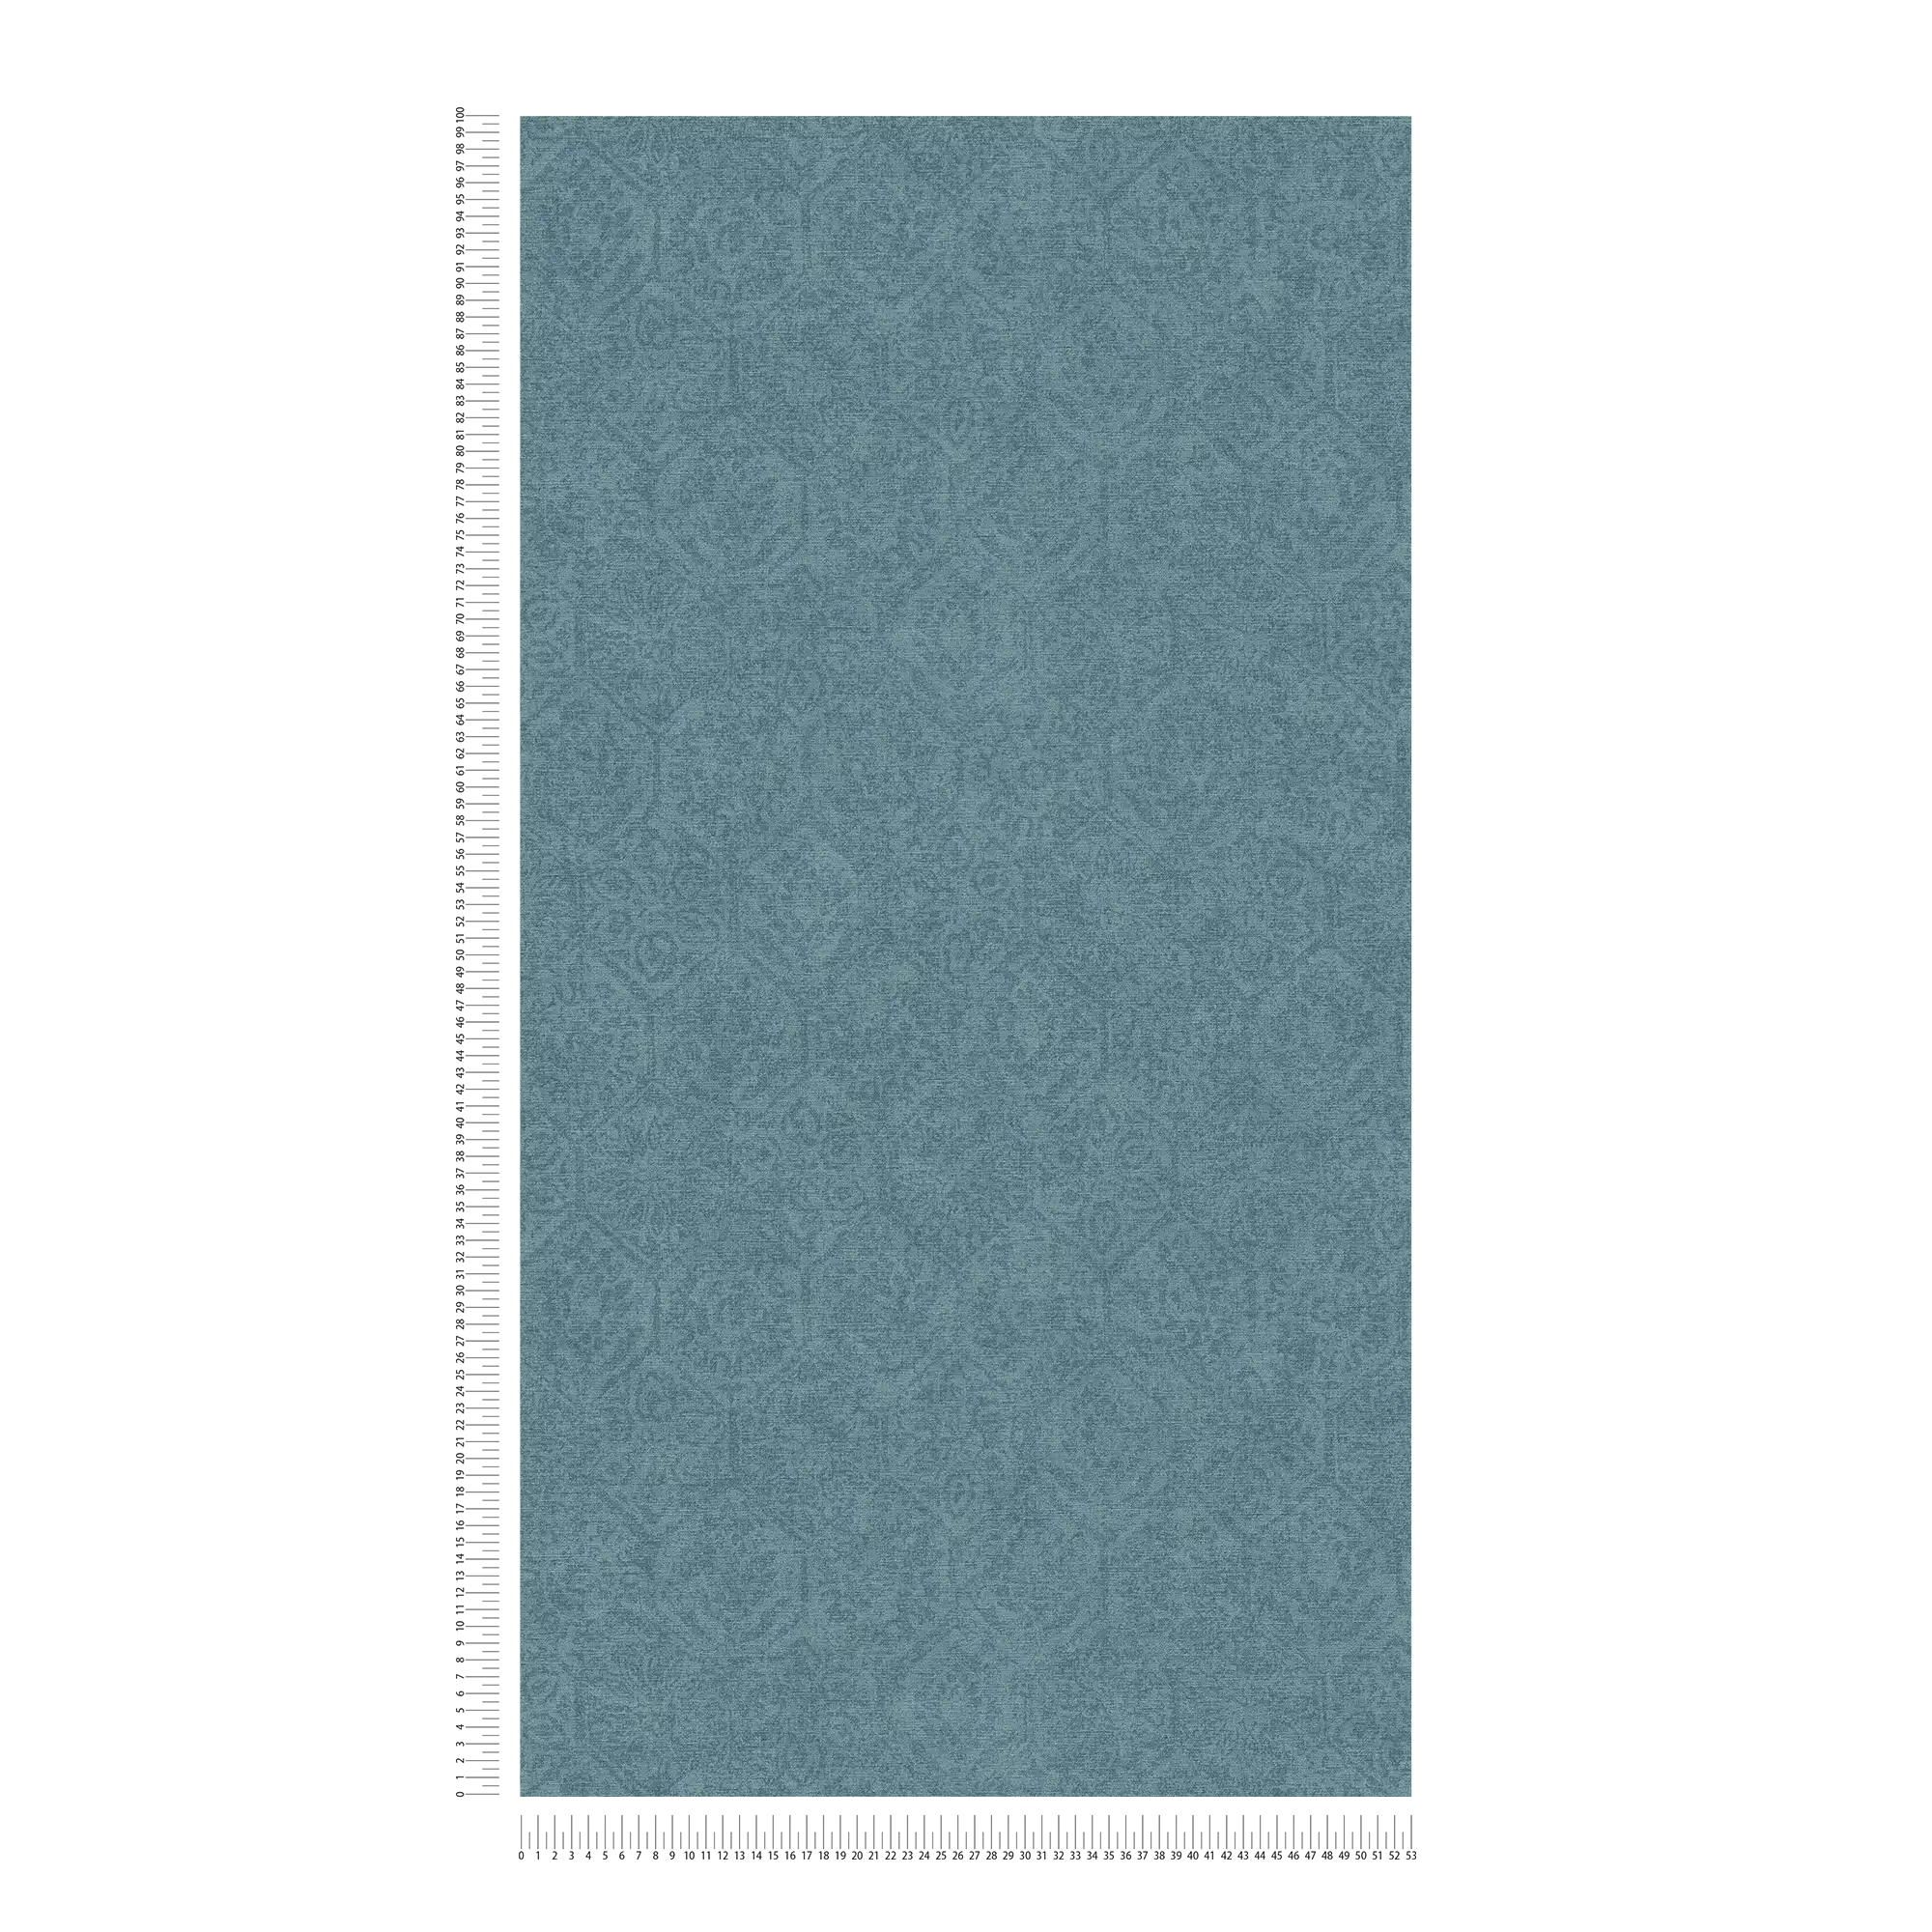             papel pintado gasolina con diseño vintage en aspecto usado - azul
        